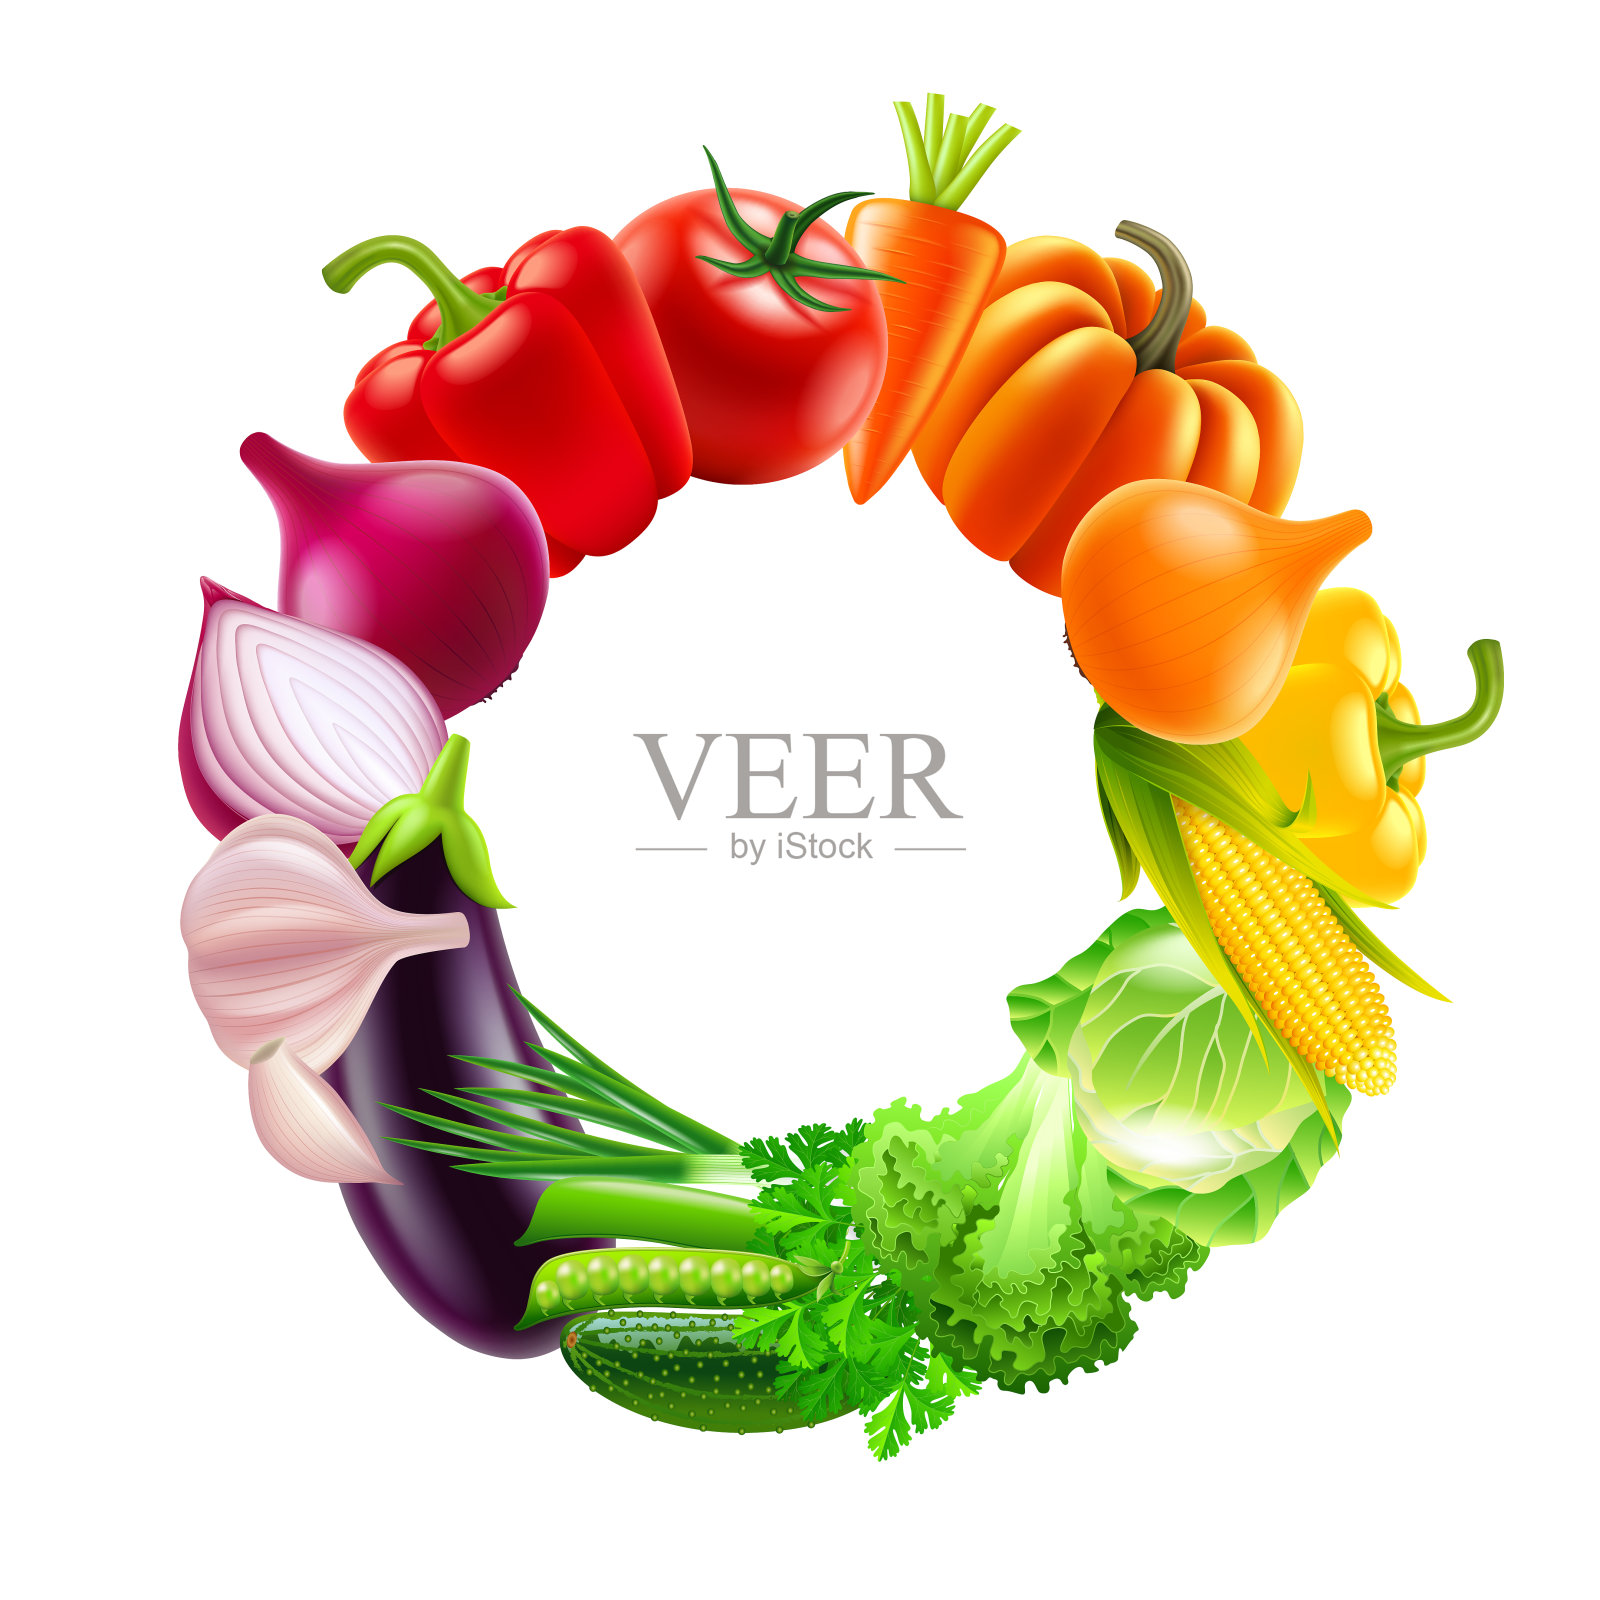 蔬菜在圆圈彩虹颜色矢量背景设计元素图片